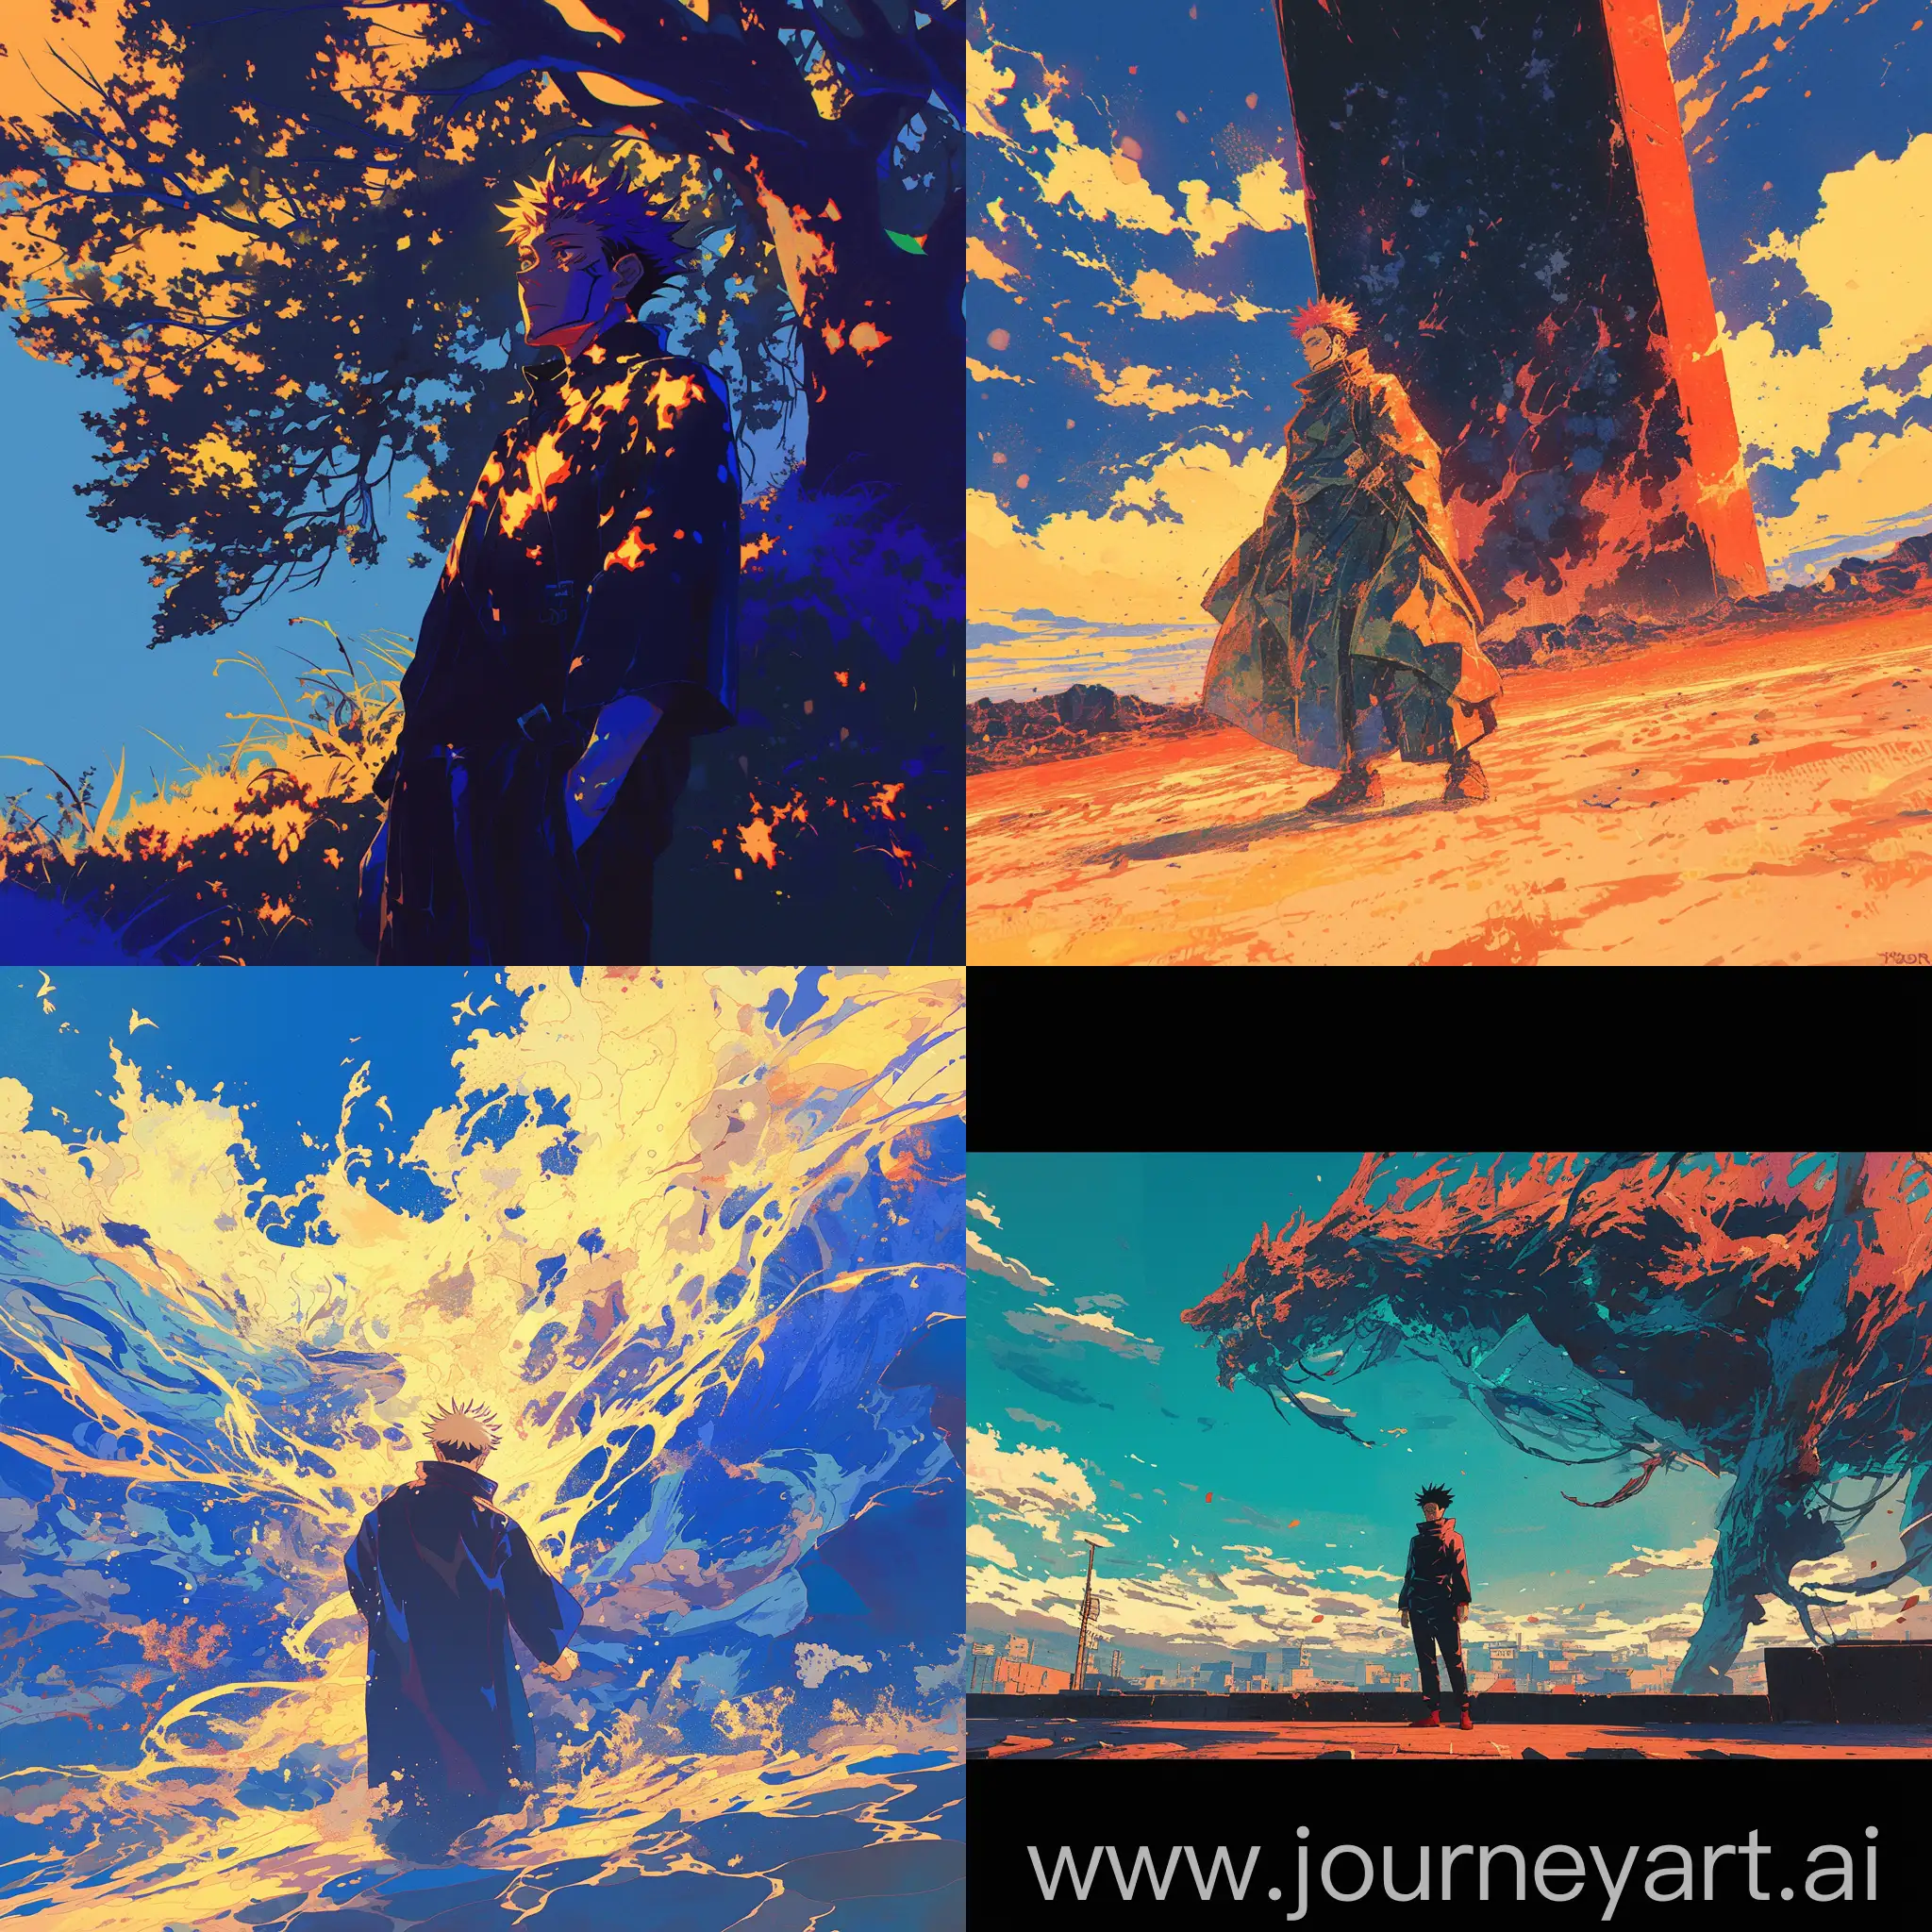 Cinematic-Toji-Fushigiro-from-Jujutsu-Kaisen-by-Hayao-Miyazaki-Studio-Ghibli-Inspired-Anime-Art-with-Vibrant-Colors